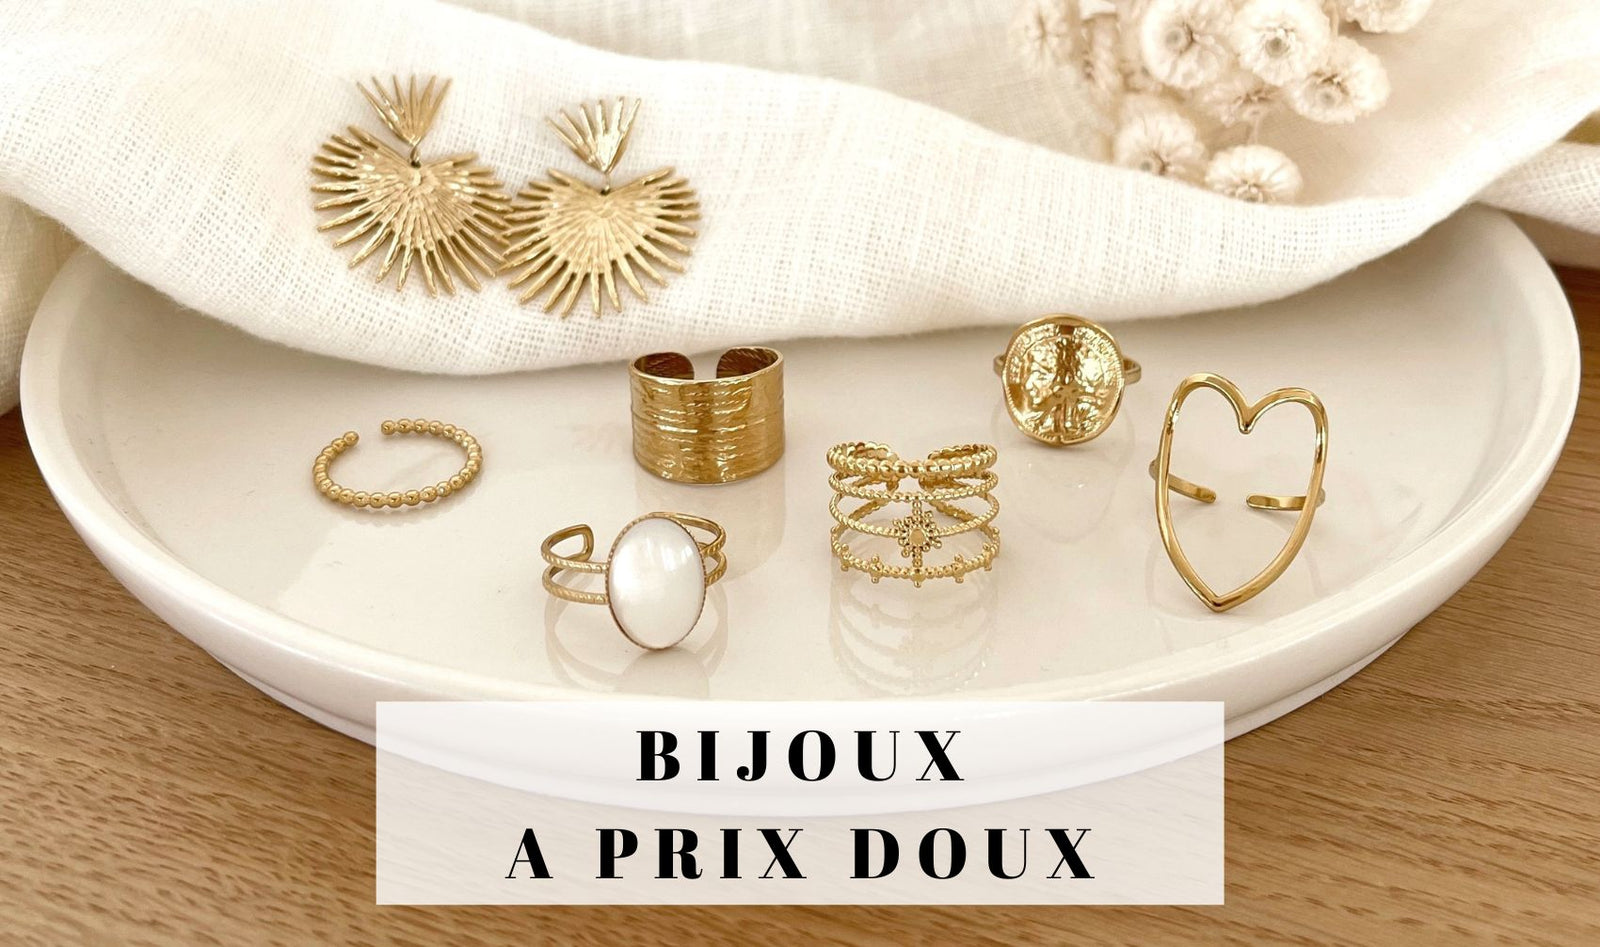 Bijoux à prix doux en acier inoxydable doré, découvrez une jolie collection inspirée pour un été sublimé avec vos accessoires tendance !